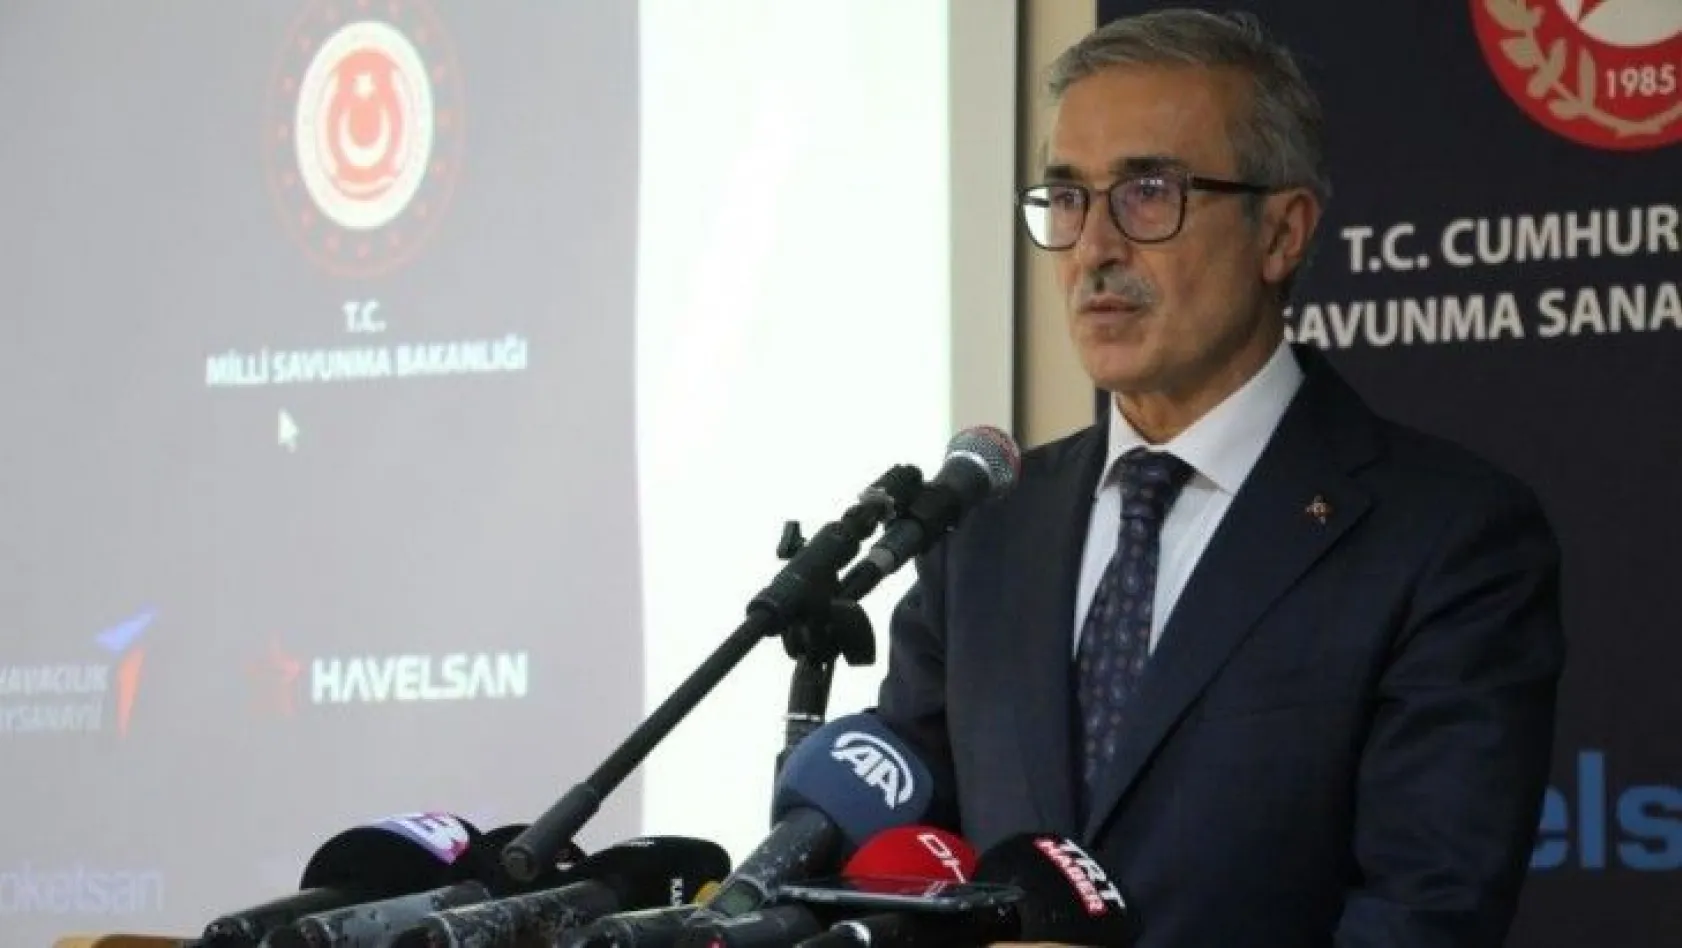 Savunma Sanayii Başkanı İsmail Demir'den, açıklamalar